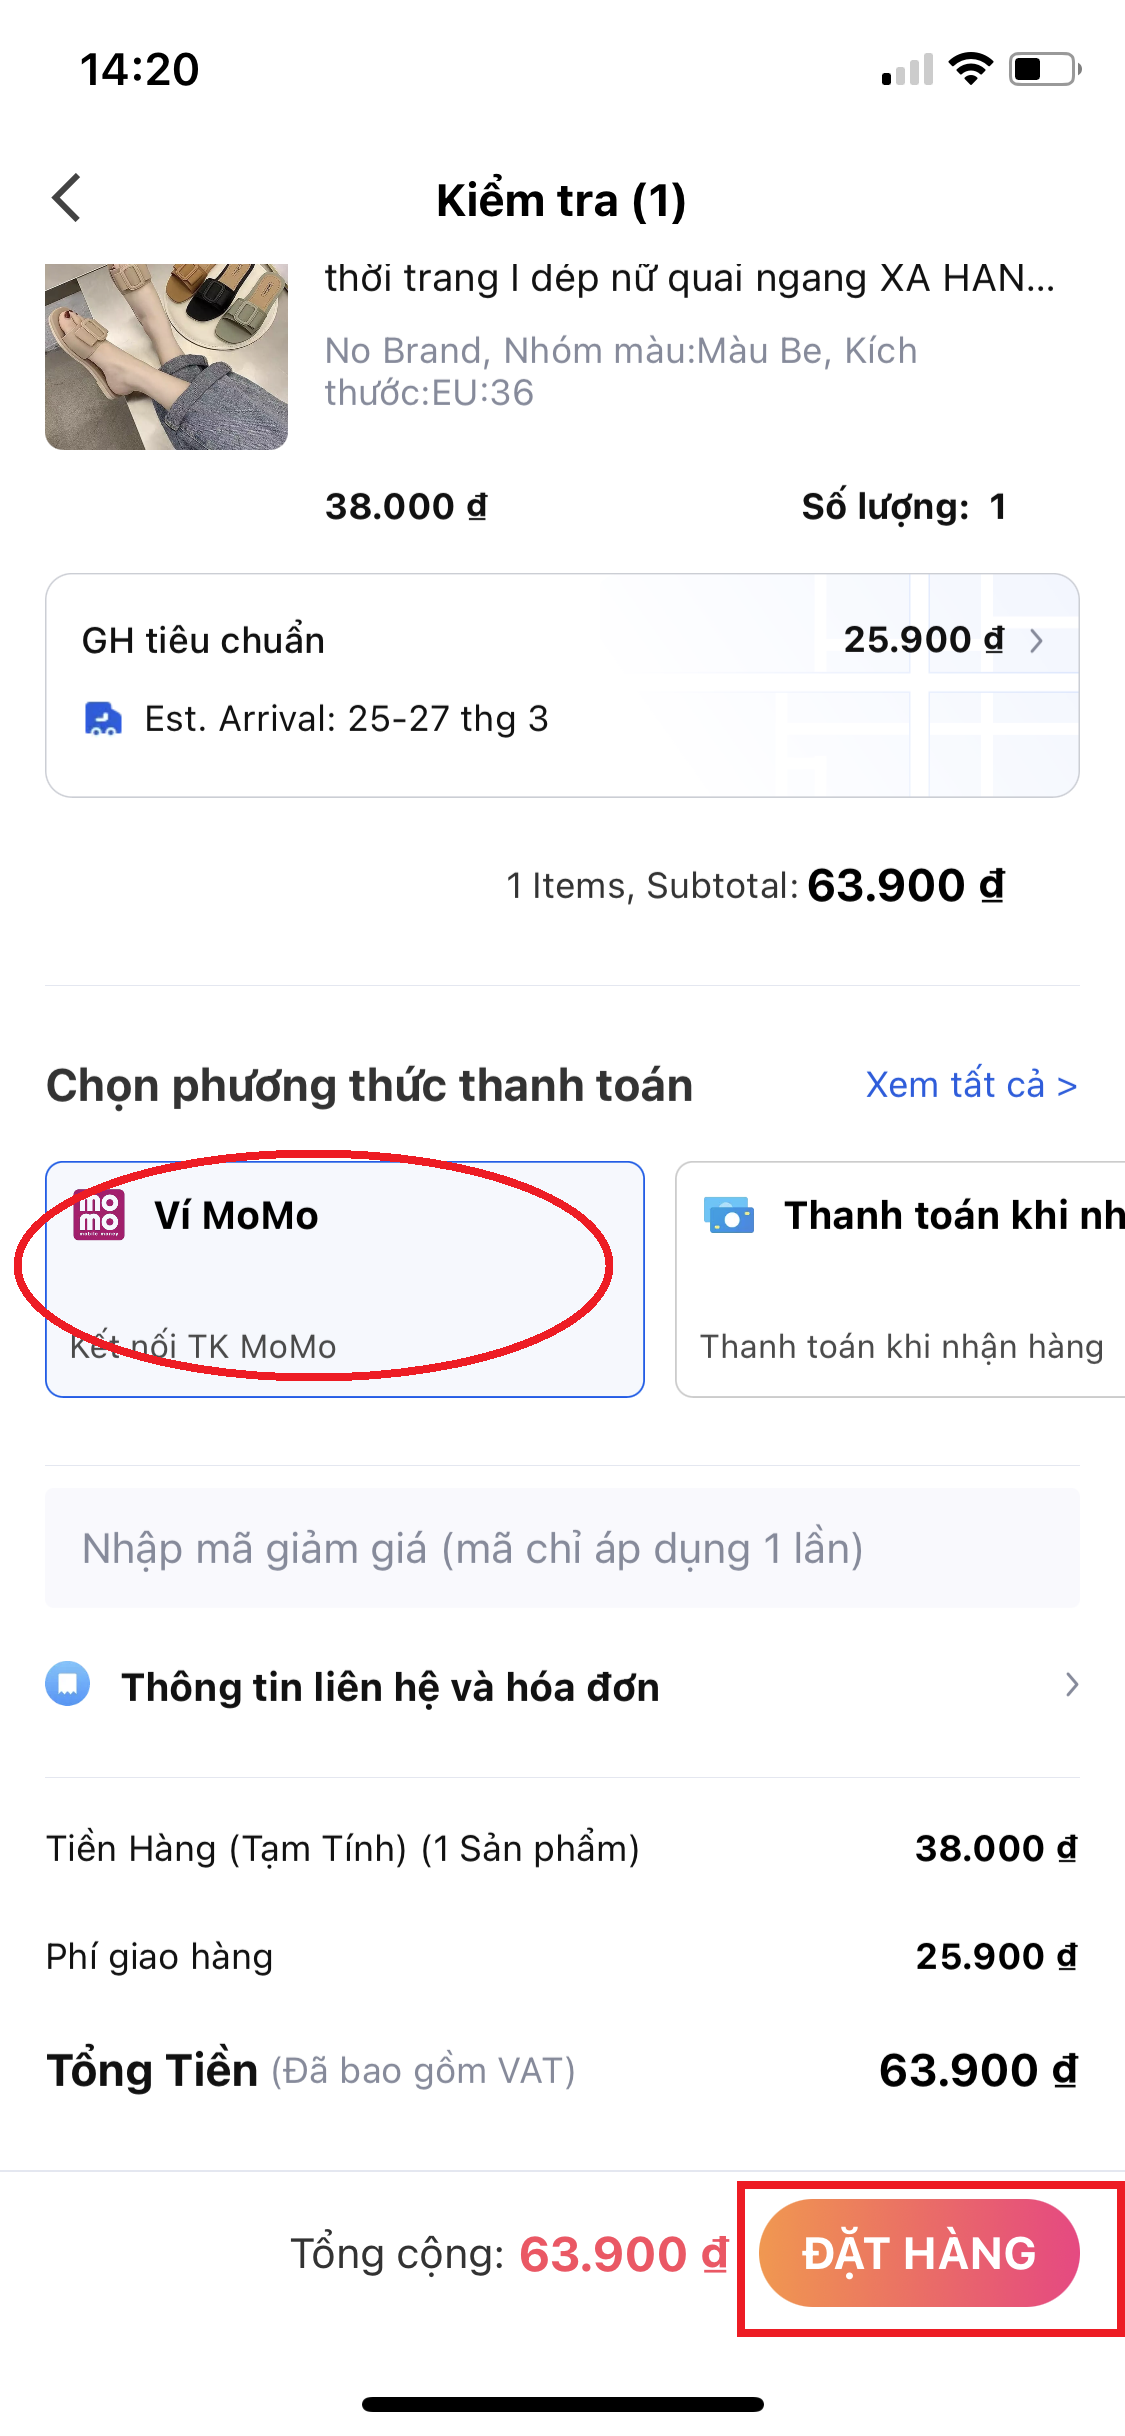 Nhấn đặt hàng sau khi chọn thanh toán bằng ví Momo